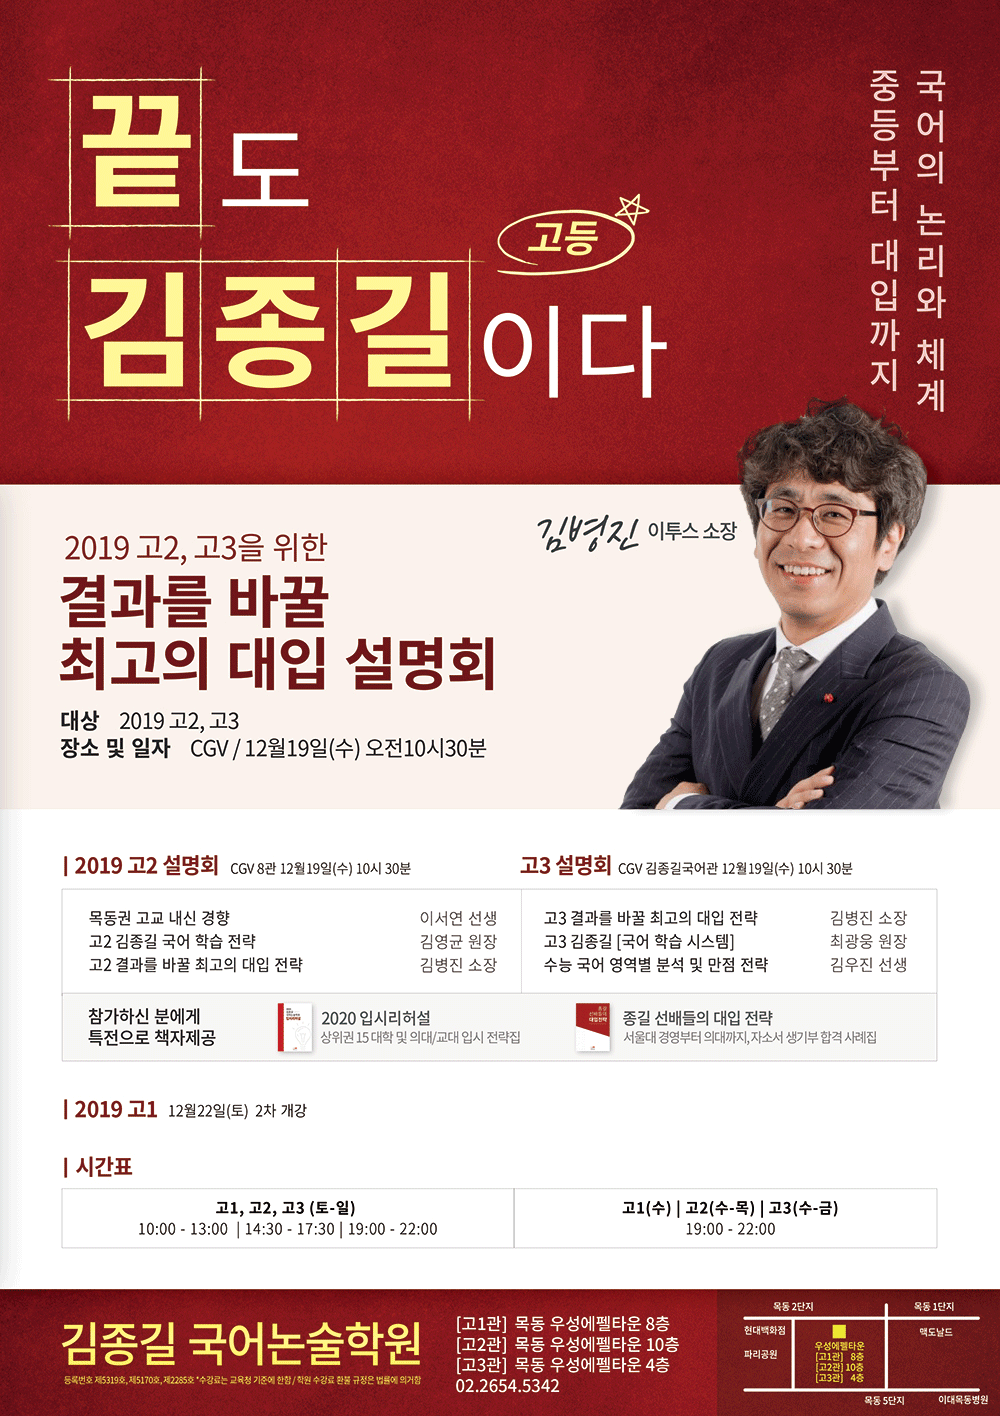 목공아 광고내용_고등부(2018.12.06).gif